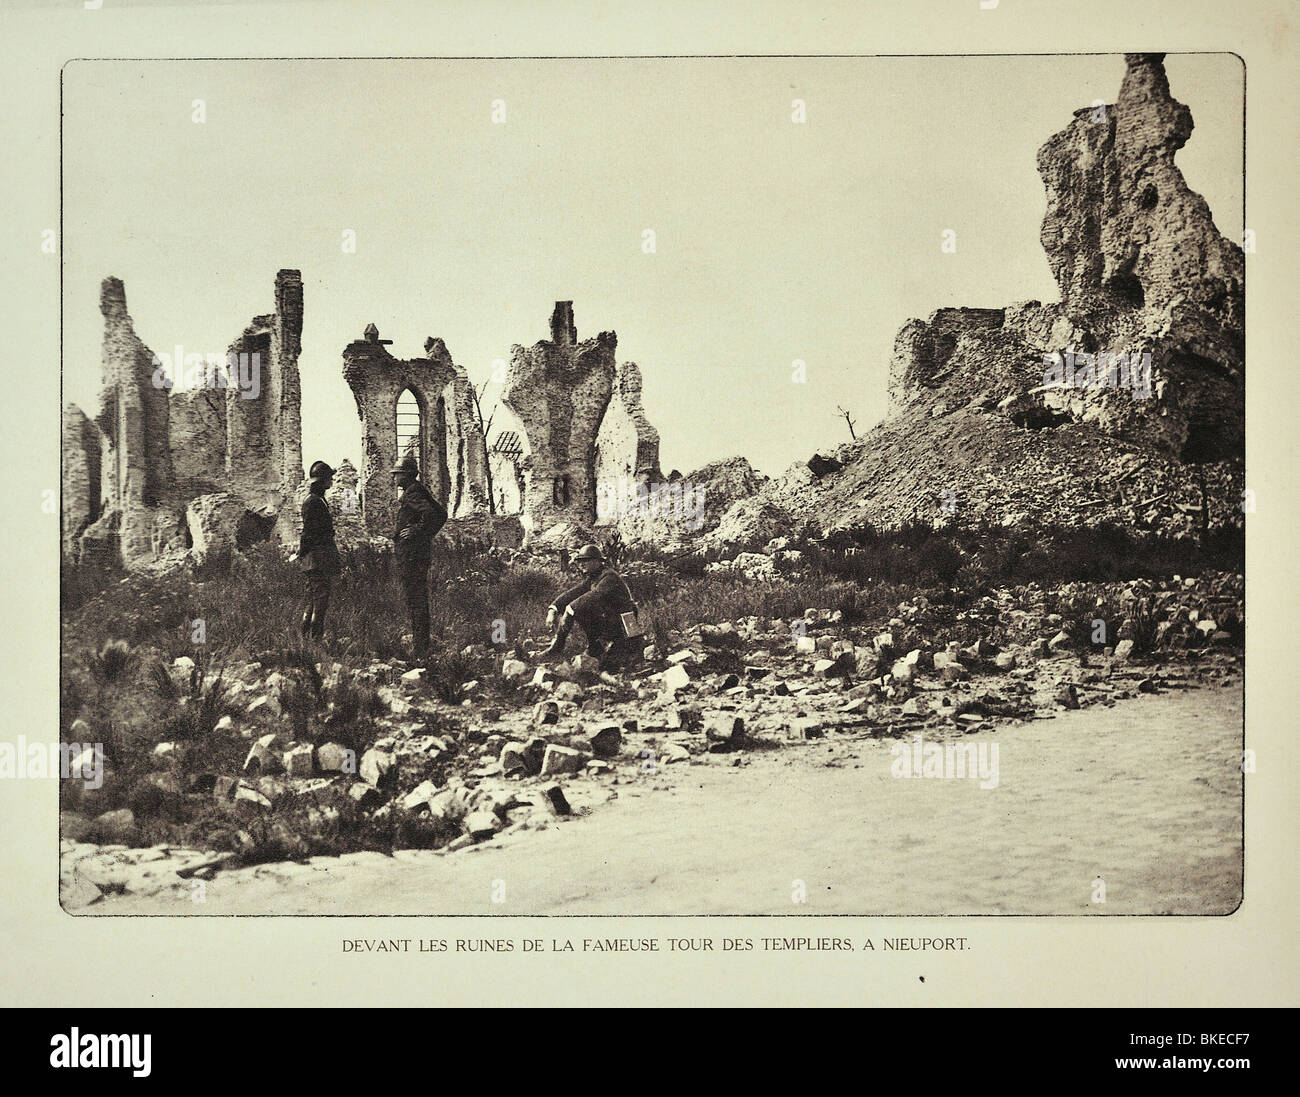 Les soldats de la première guerre mondiale et la Tour du Temple en ruines après le bombardement à Nieuport en Flandre occidentale pendant la Première Guerre mondiale, la Belgique Banque D'Images